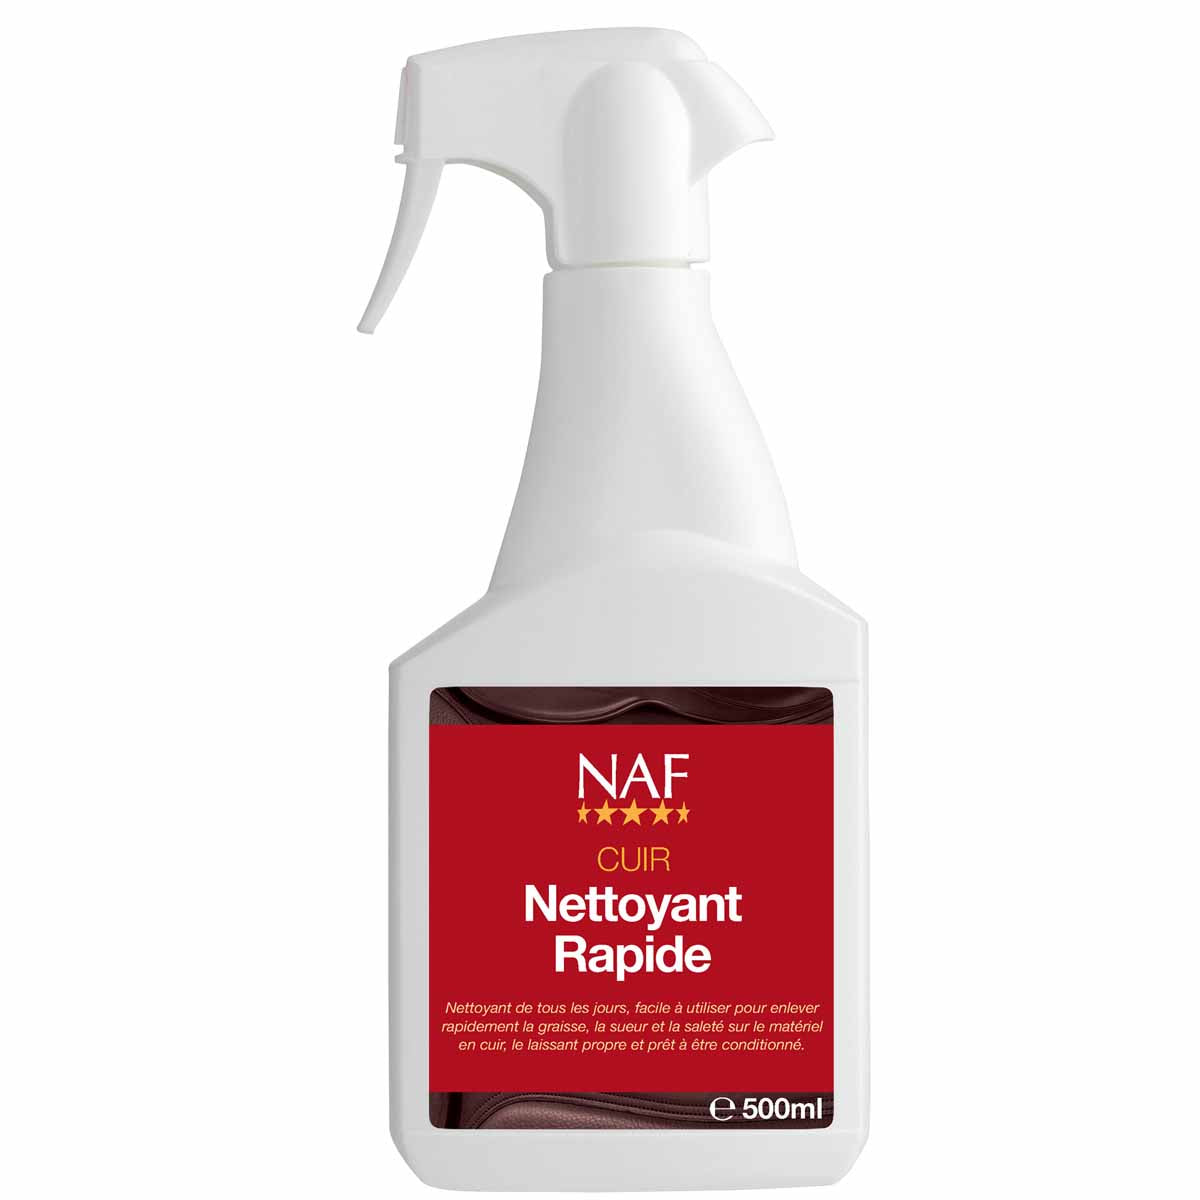 Spray Naf Nettoyant Rapide pour l'entretien du cuir